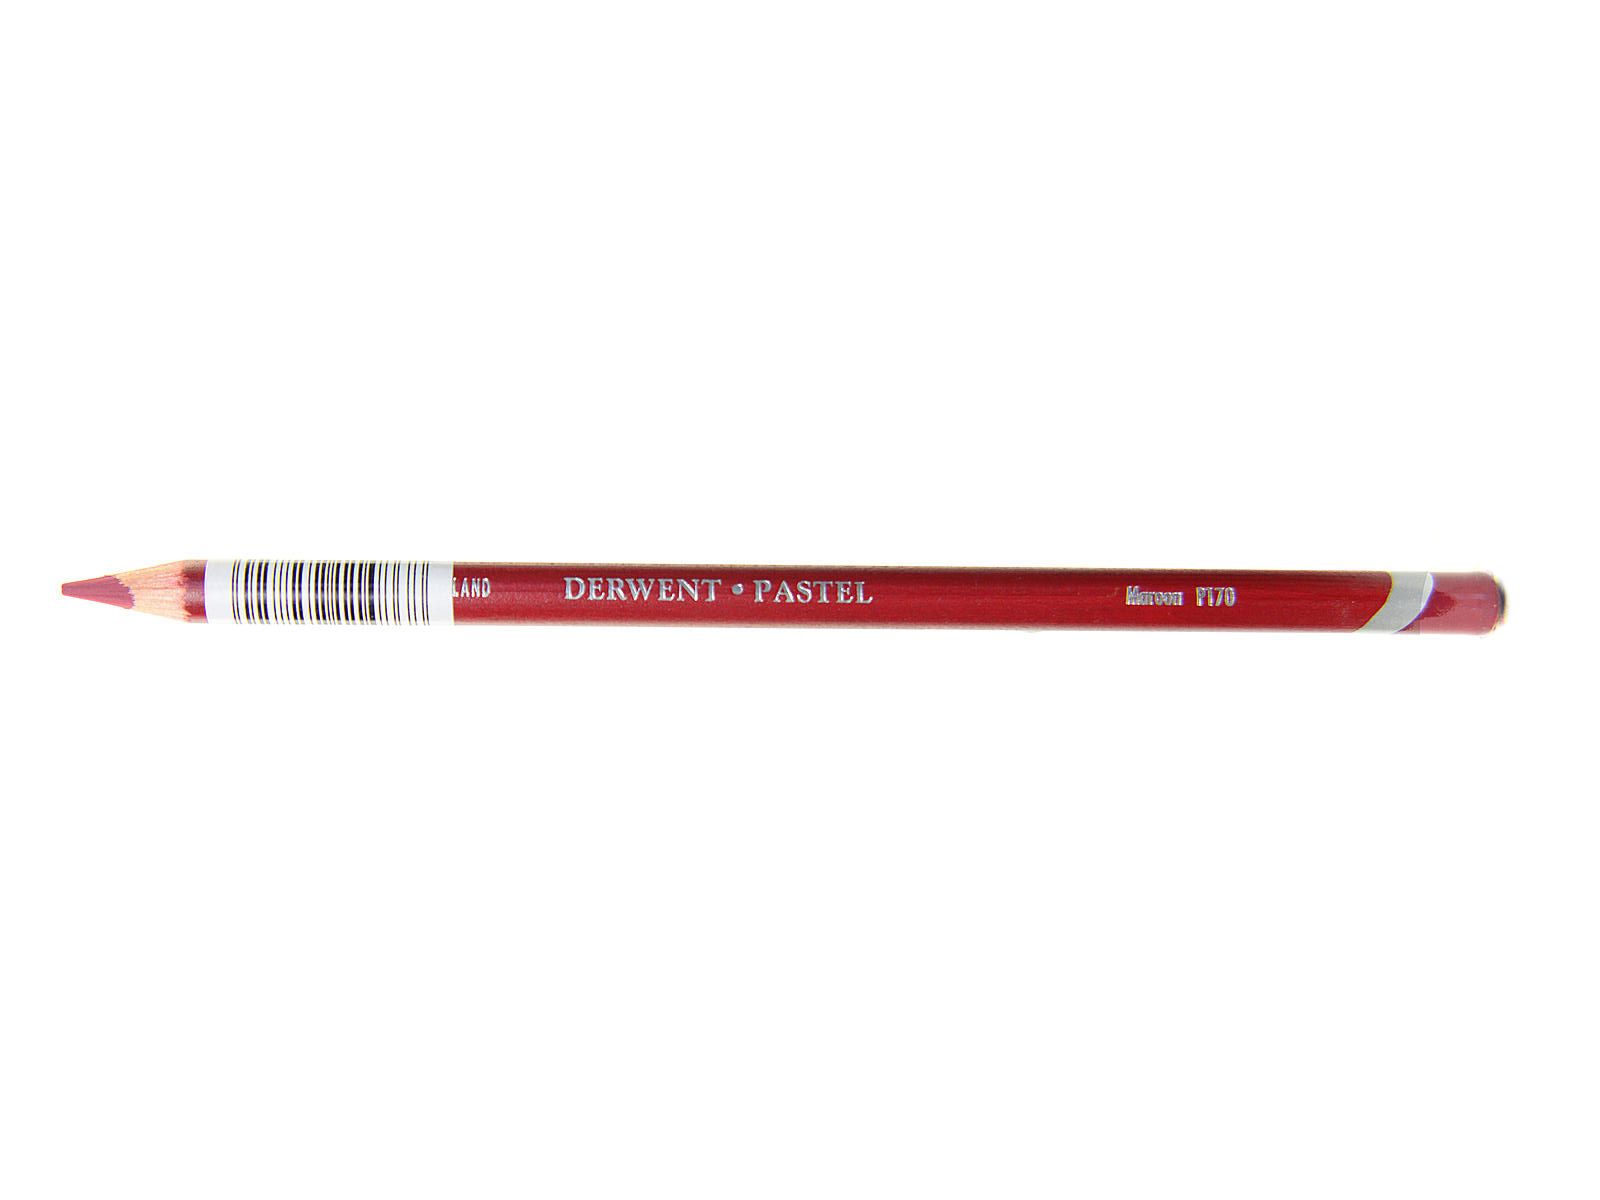 Derwent Pastel Pencil - P170 Maroon